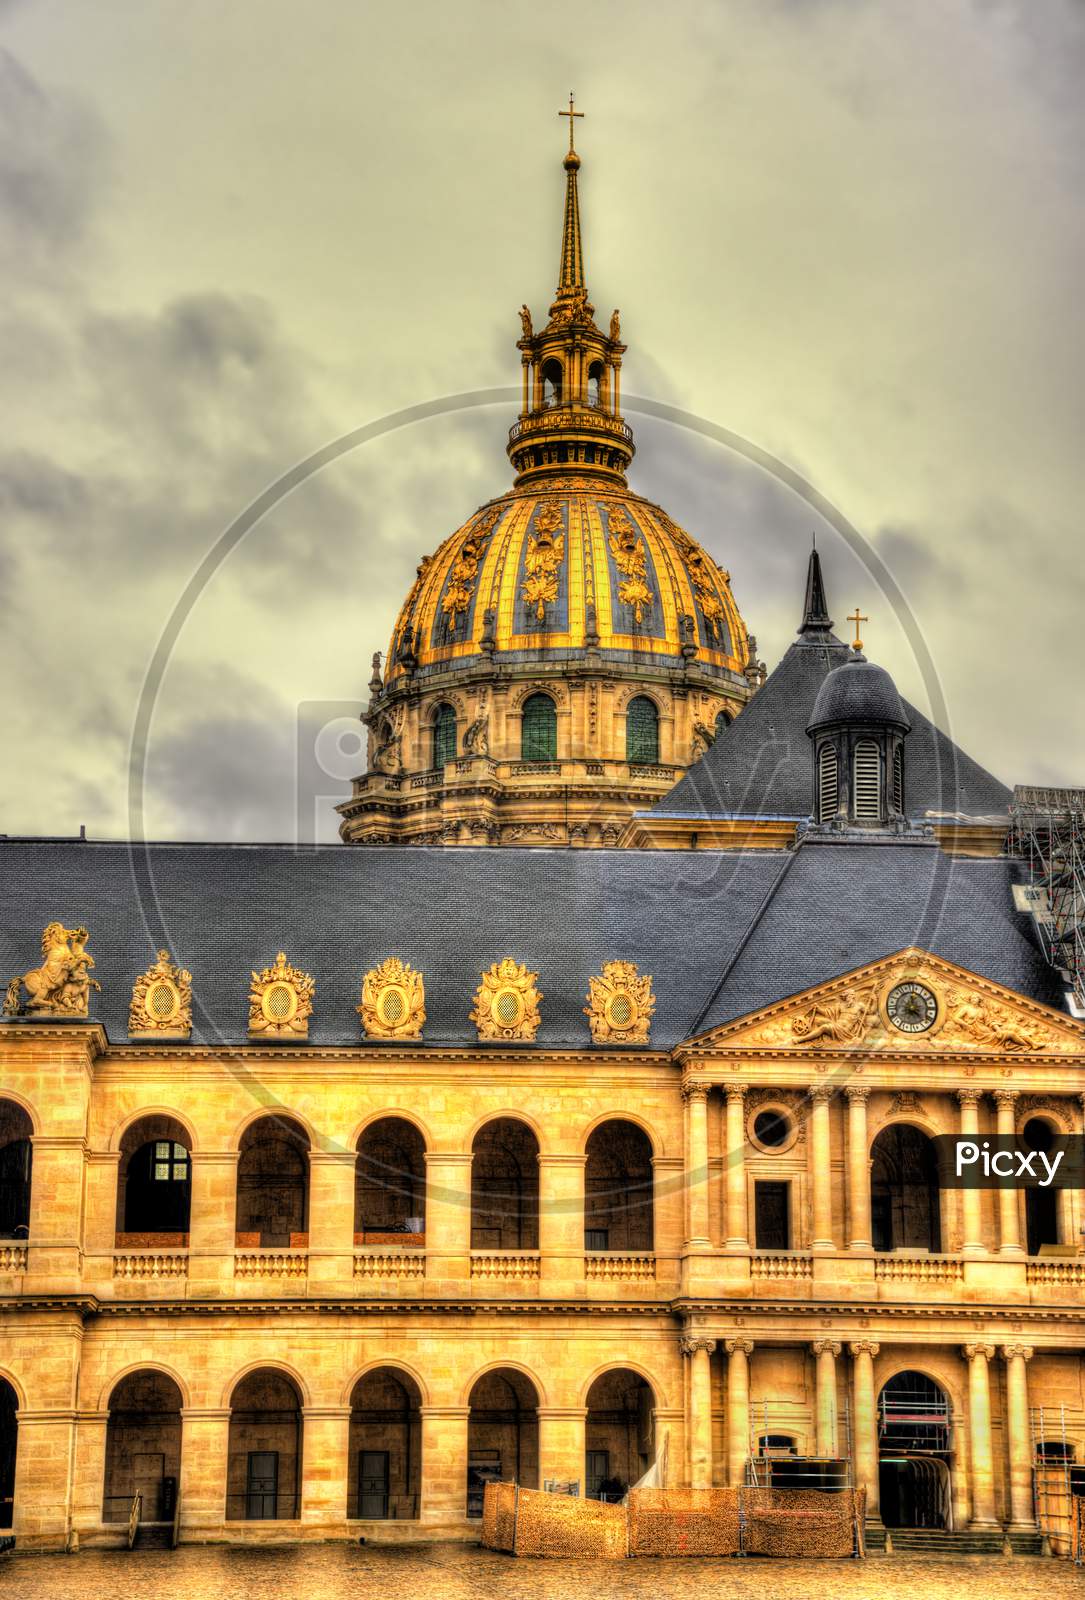 Eglise Du Dome At Les Invalides - Paris